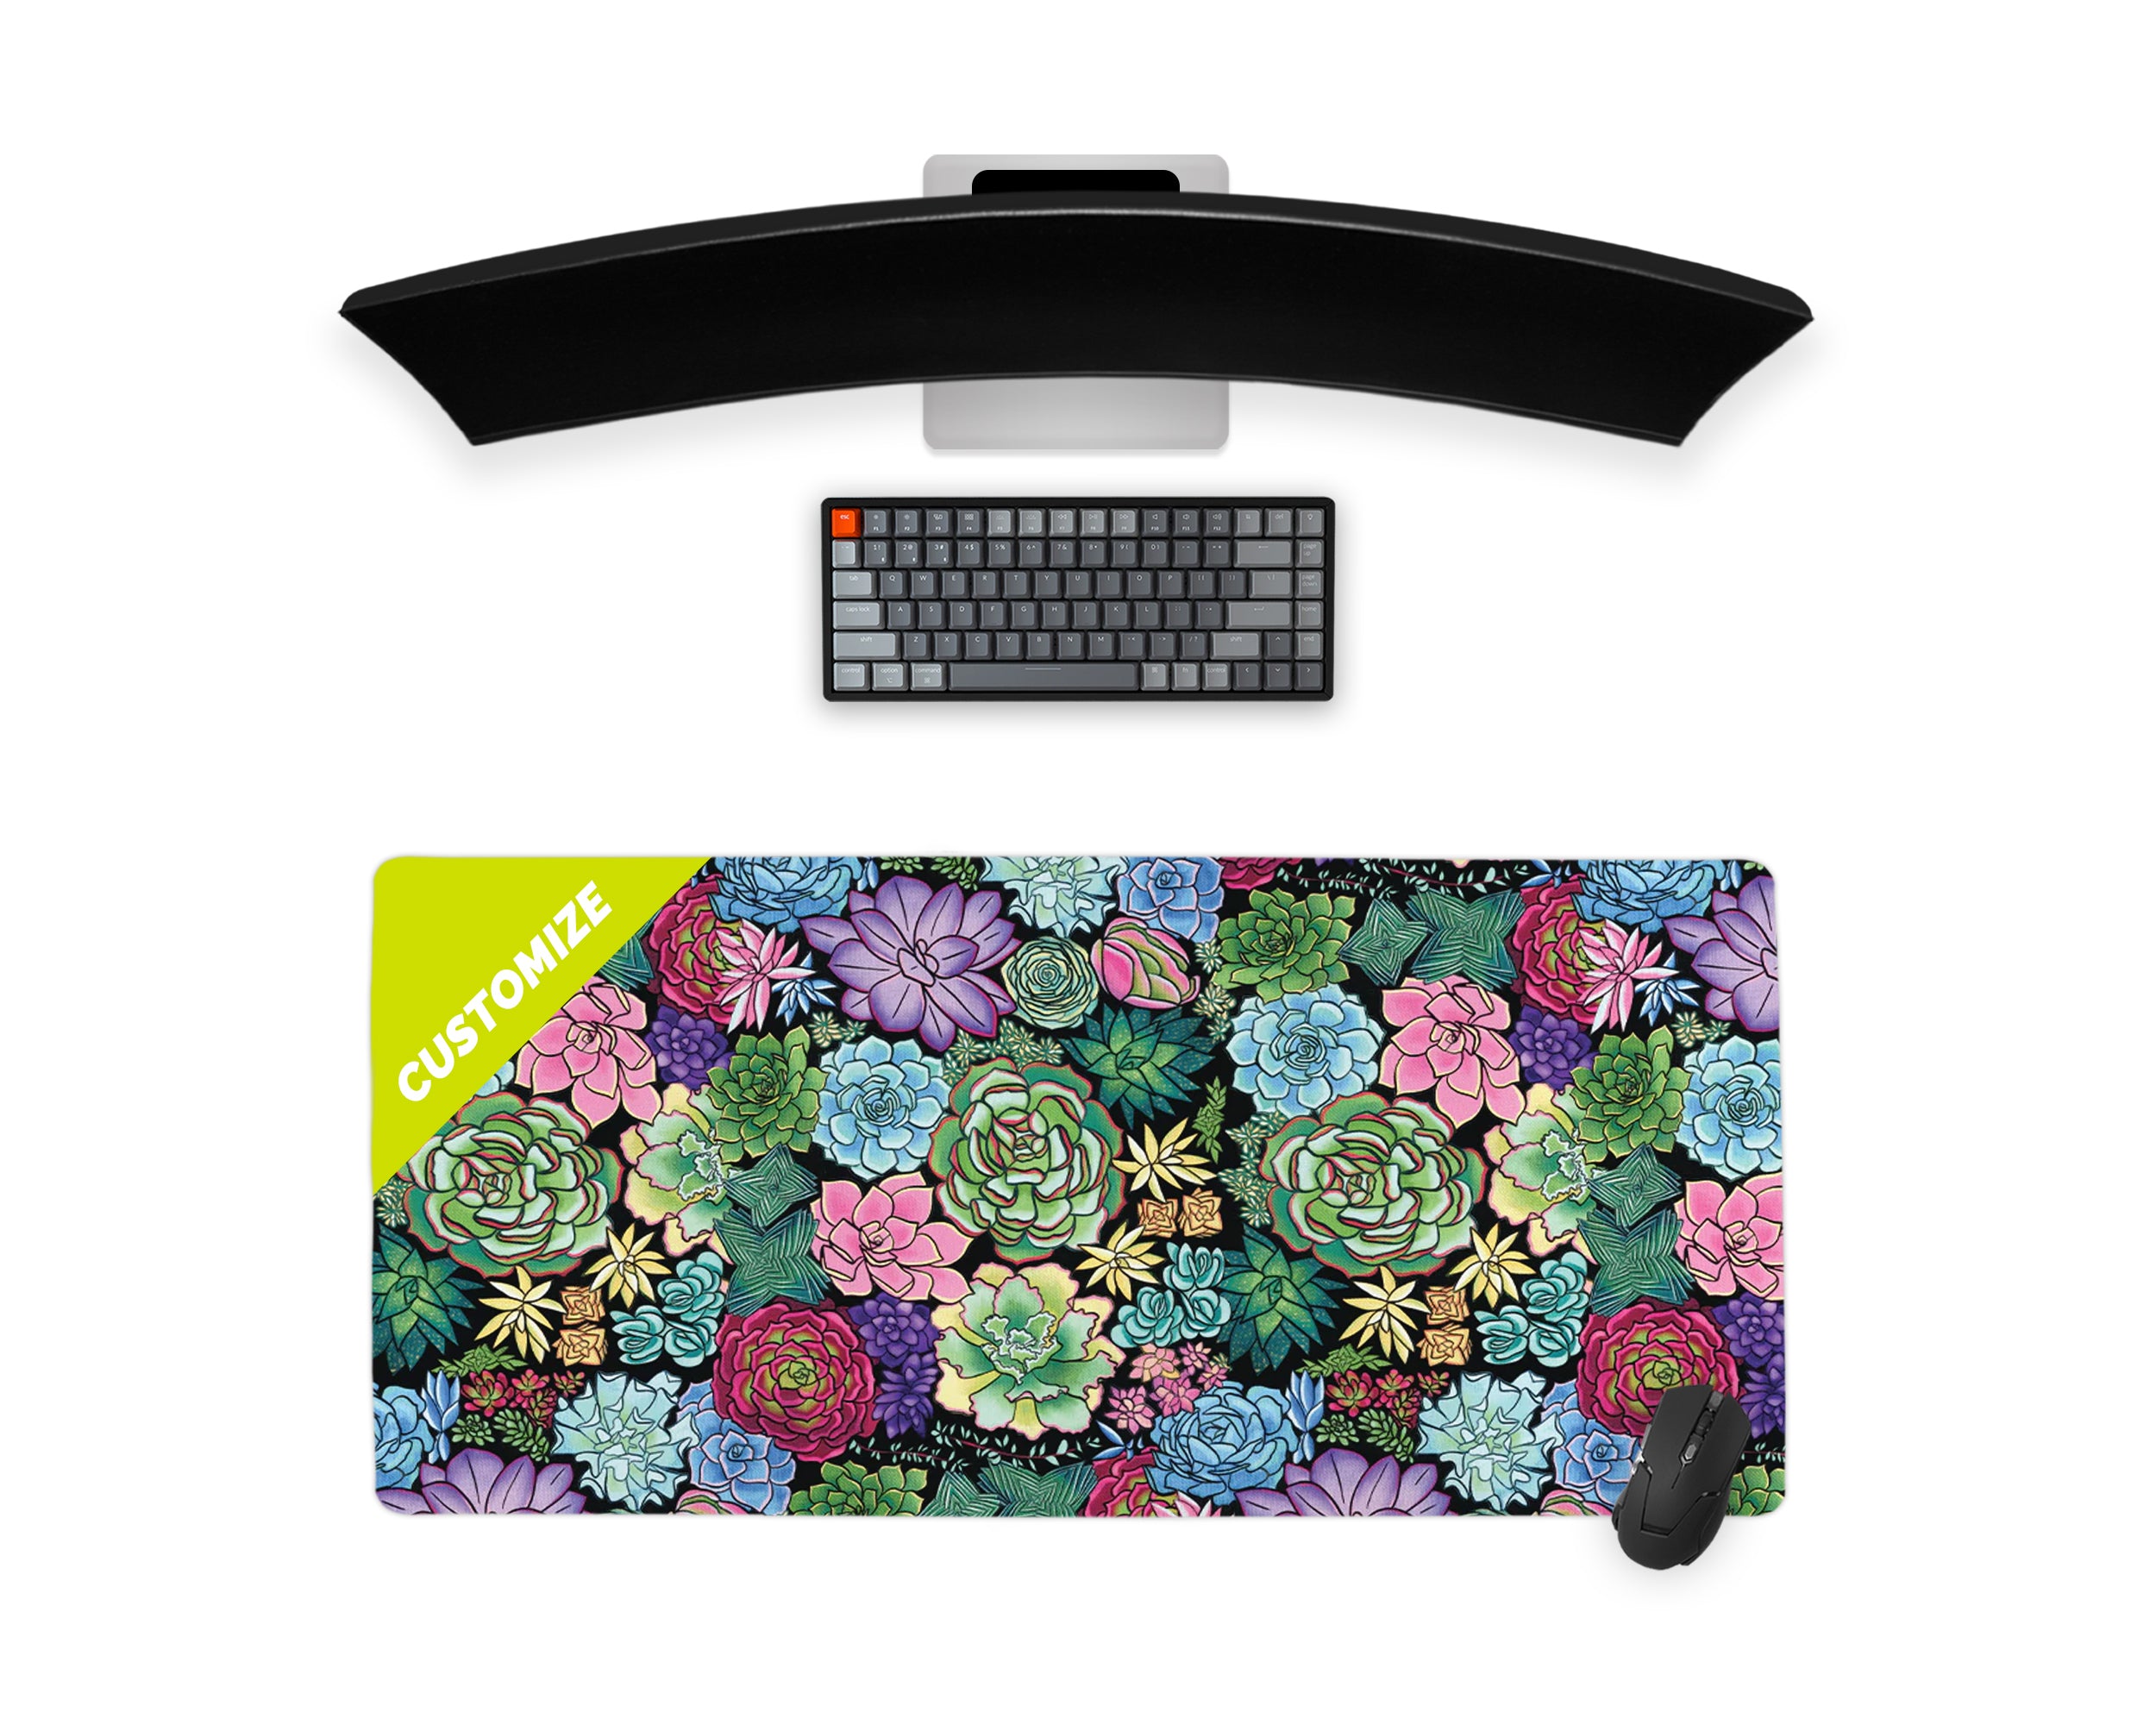 Alucard Hellsing Wallpaper mouse pad computer mousepad: .co